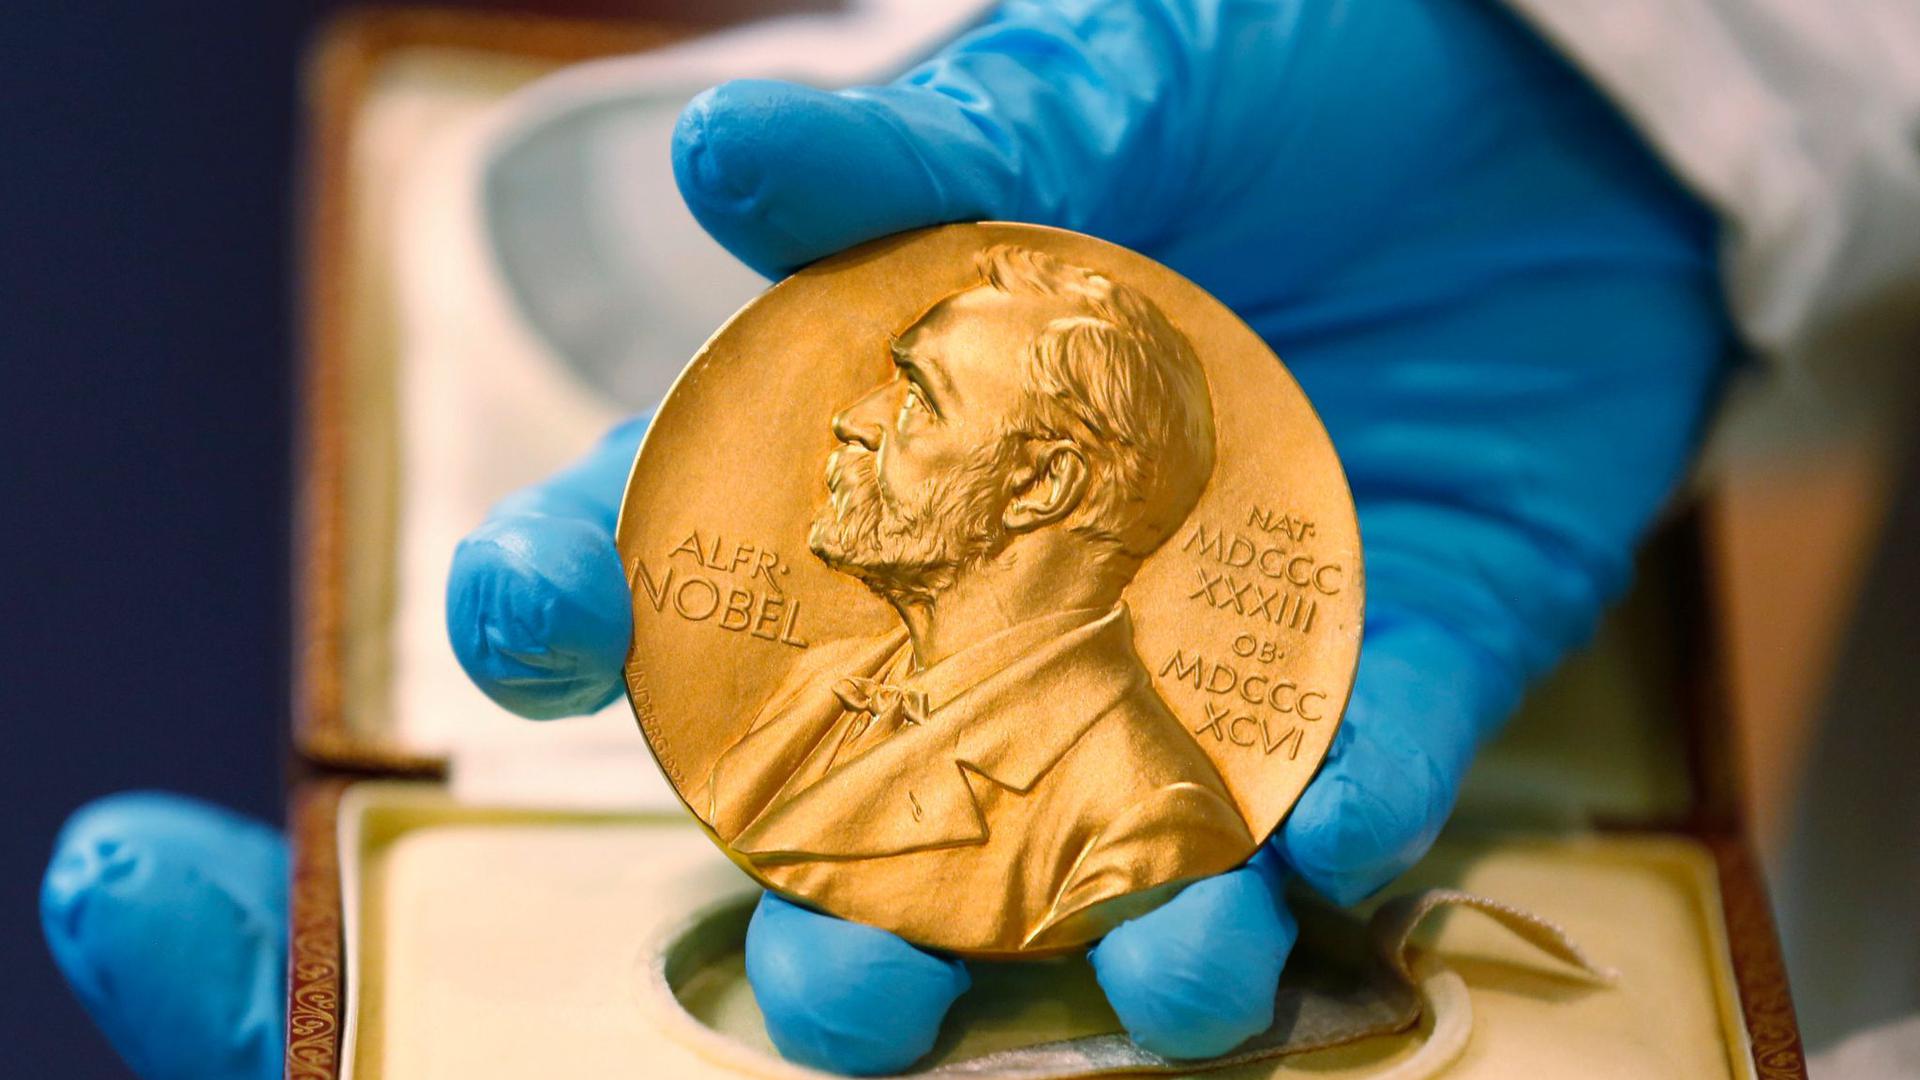 Ein Mitarbeiter der Nationalbibliothek zeigt eine goldene Nobelpreismedaille.